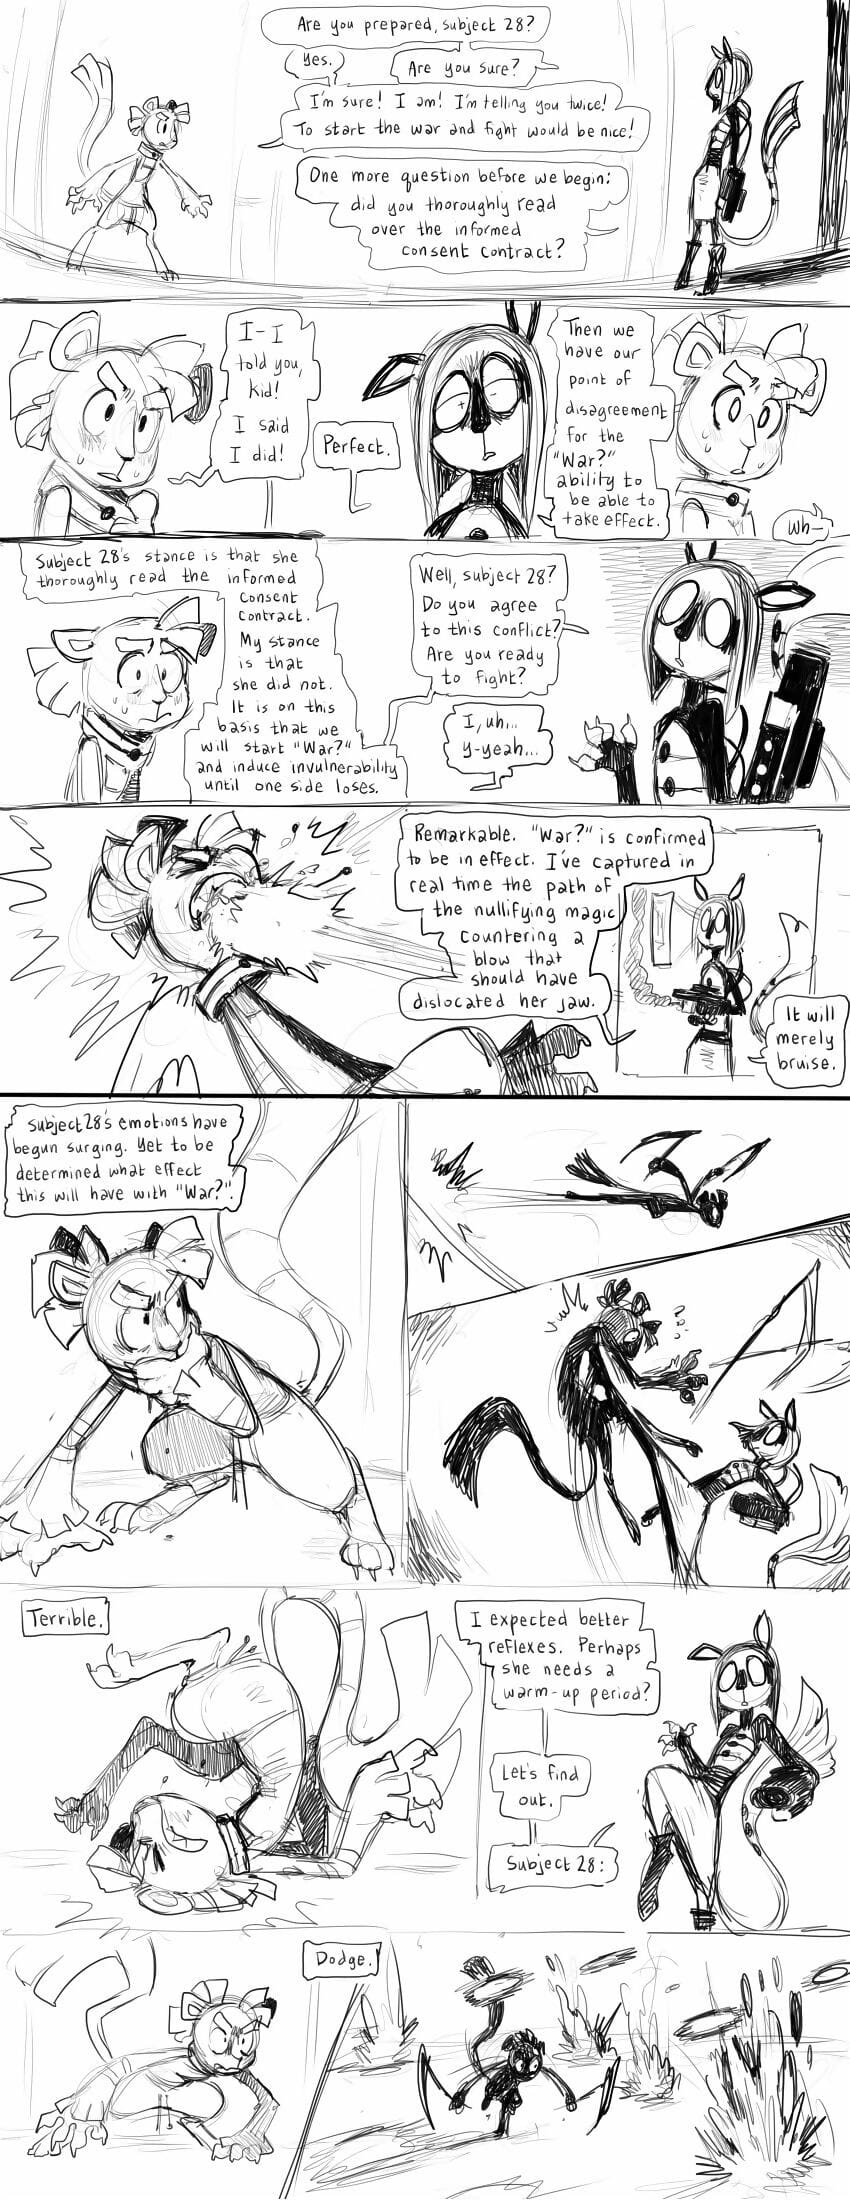 Miscellaneous comics - part 3 page 1